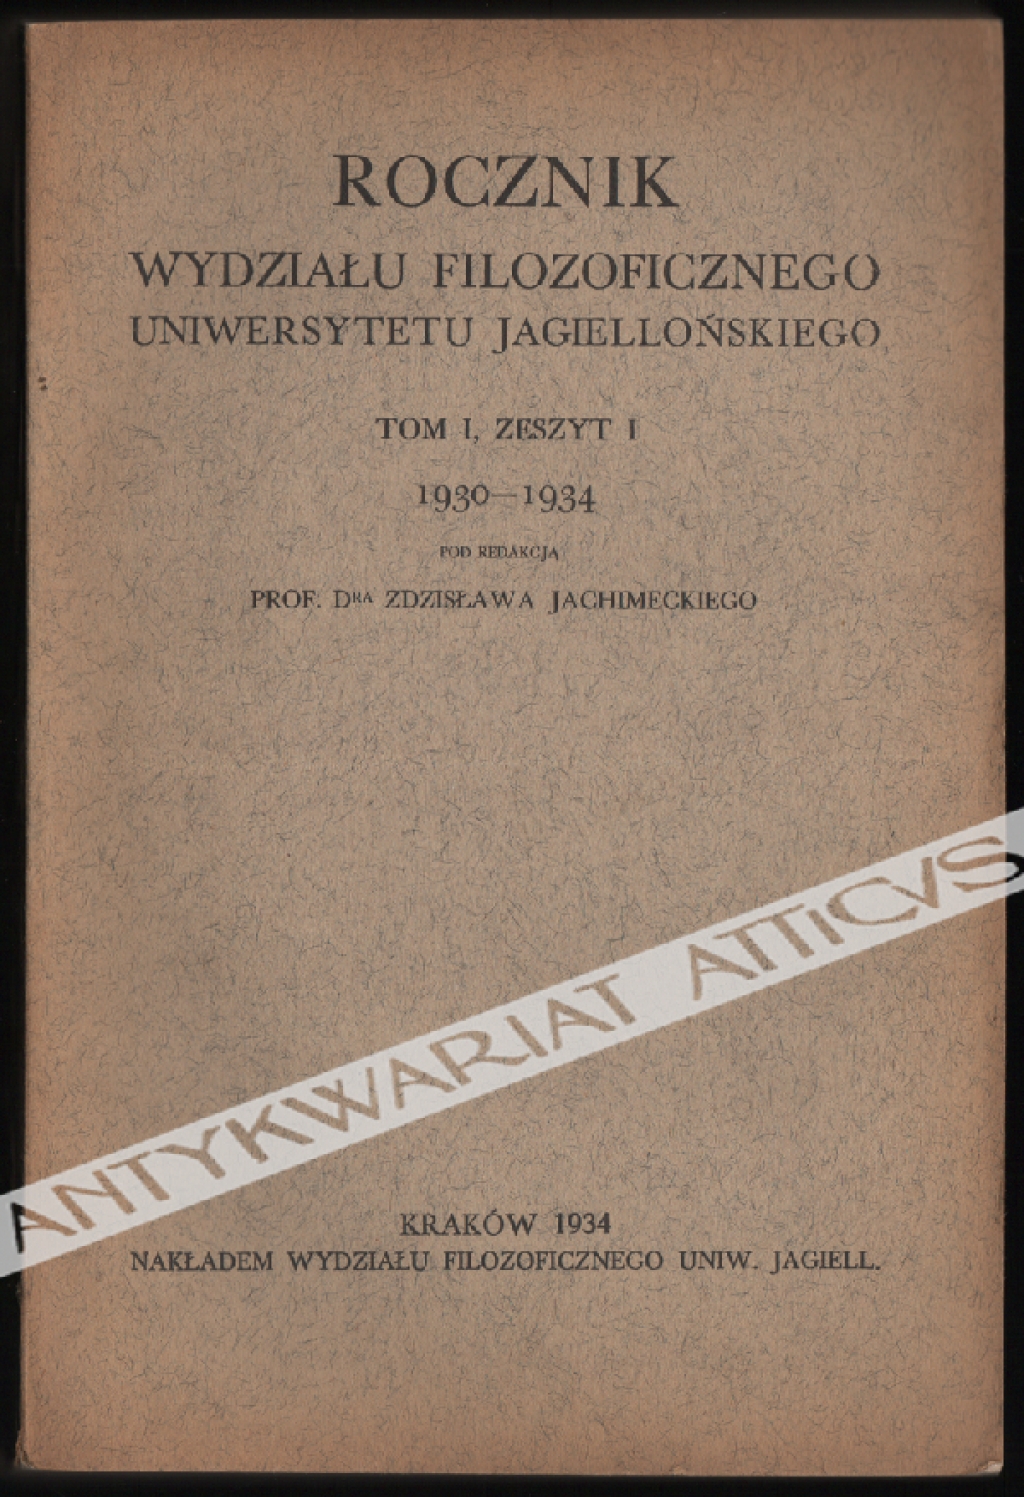 Rocznik Wydziału Filozoficznego Uniwersytetu Jagiellońskiego, tom I, zesz. 1 1930-1934